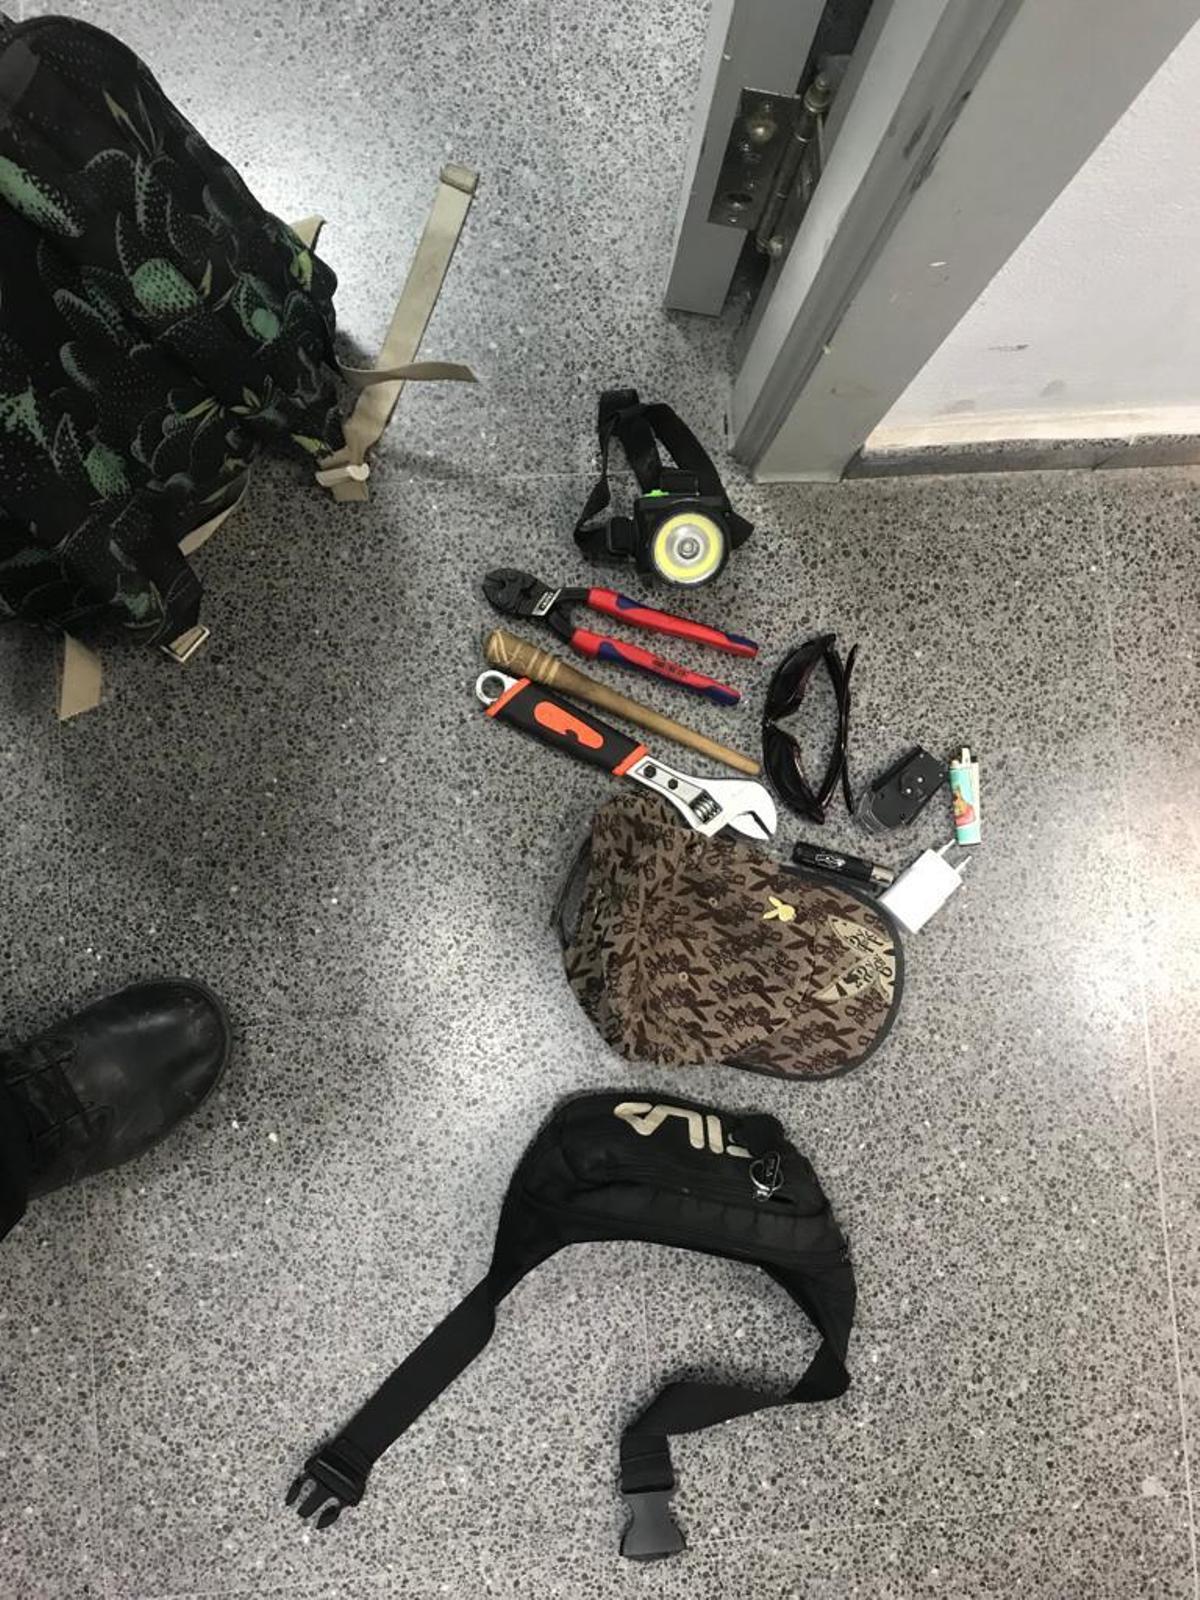 Las herramientas utilizadas por el presunto ladrón para cometer sus robos en Santa Pola